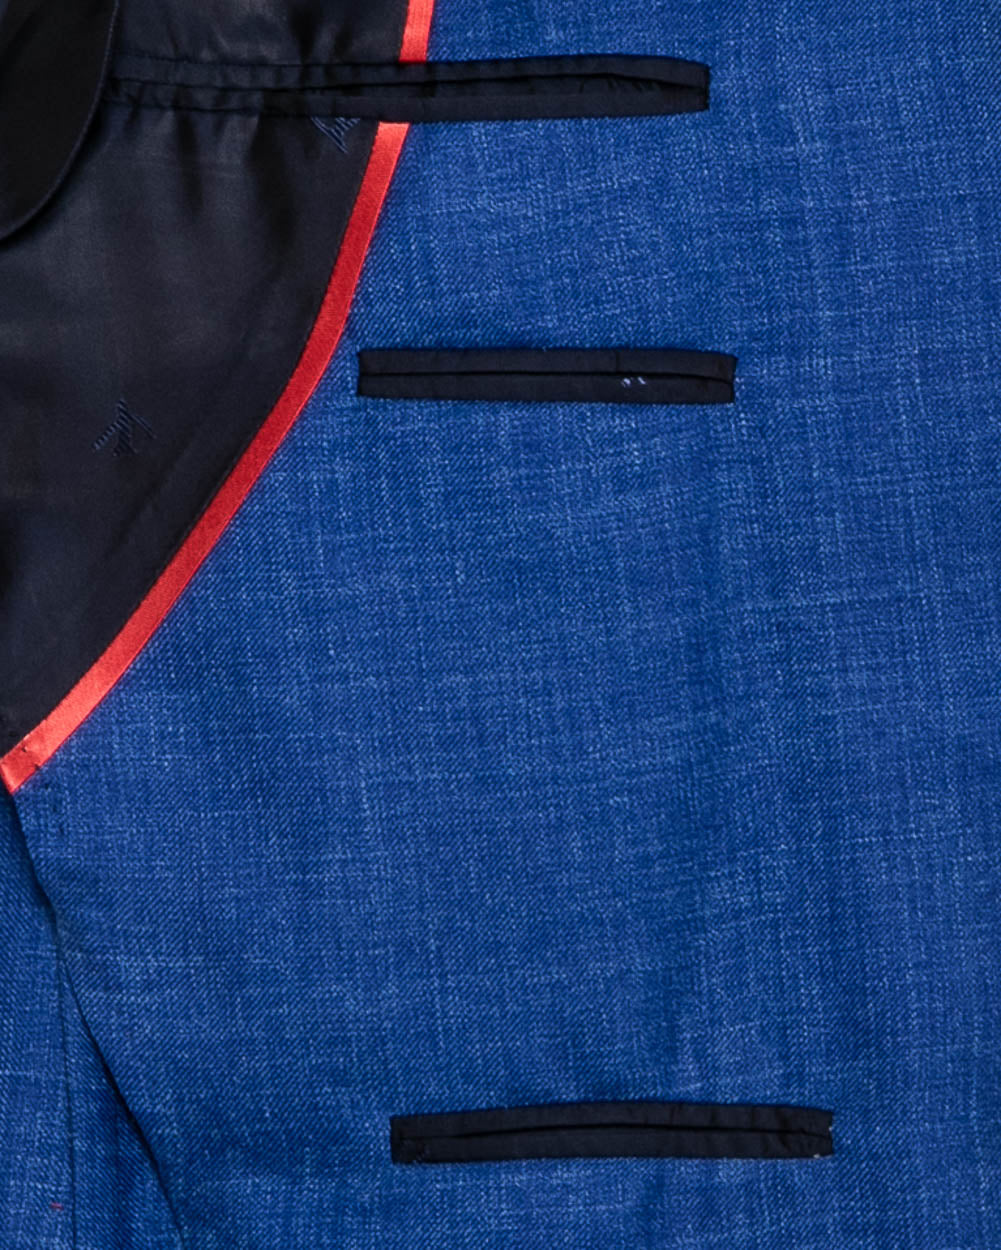 Royal Blue Melange Sportcoat